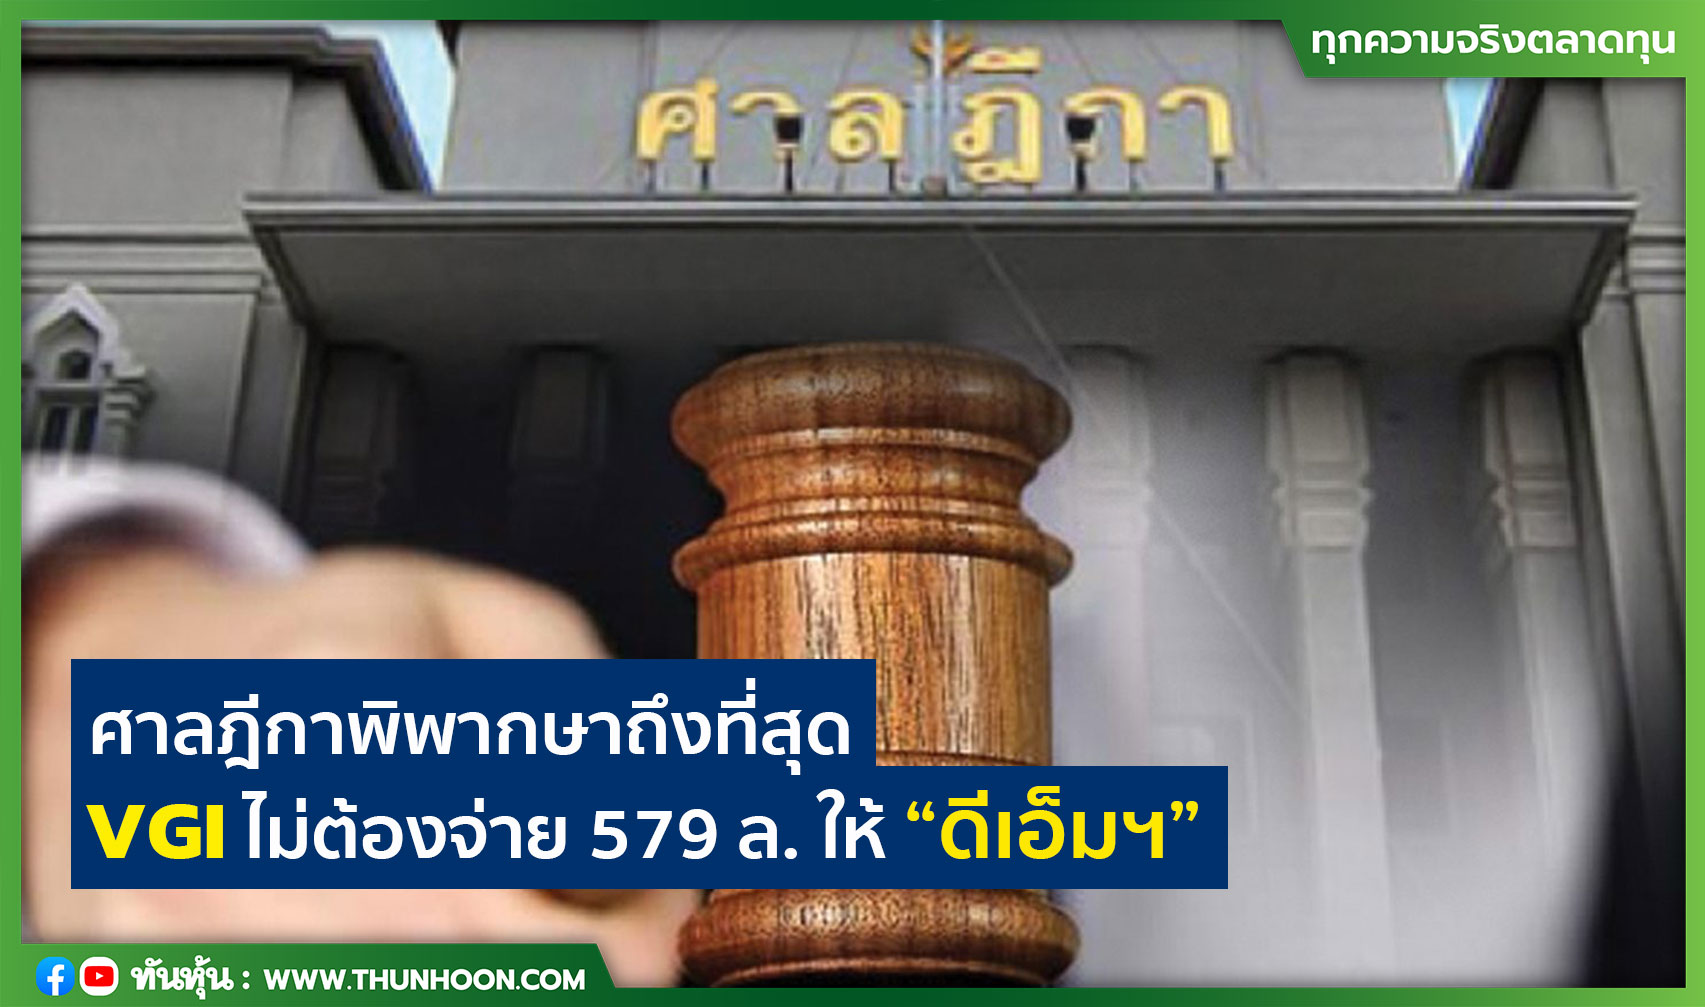 ศาลฎีกาพิพากษาถึงที่สุด VGI ไม่ต้องจ่าย 579 ล. ให้ “ดีเอ็มฯ”